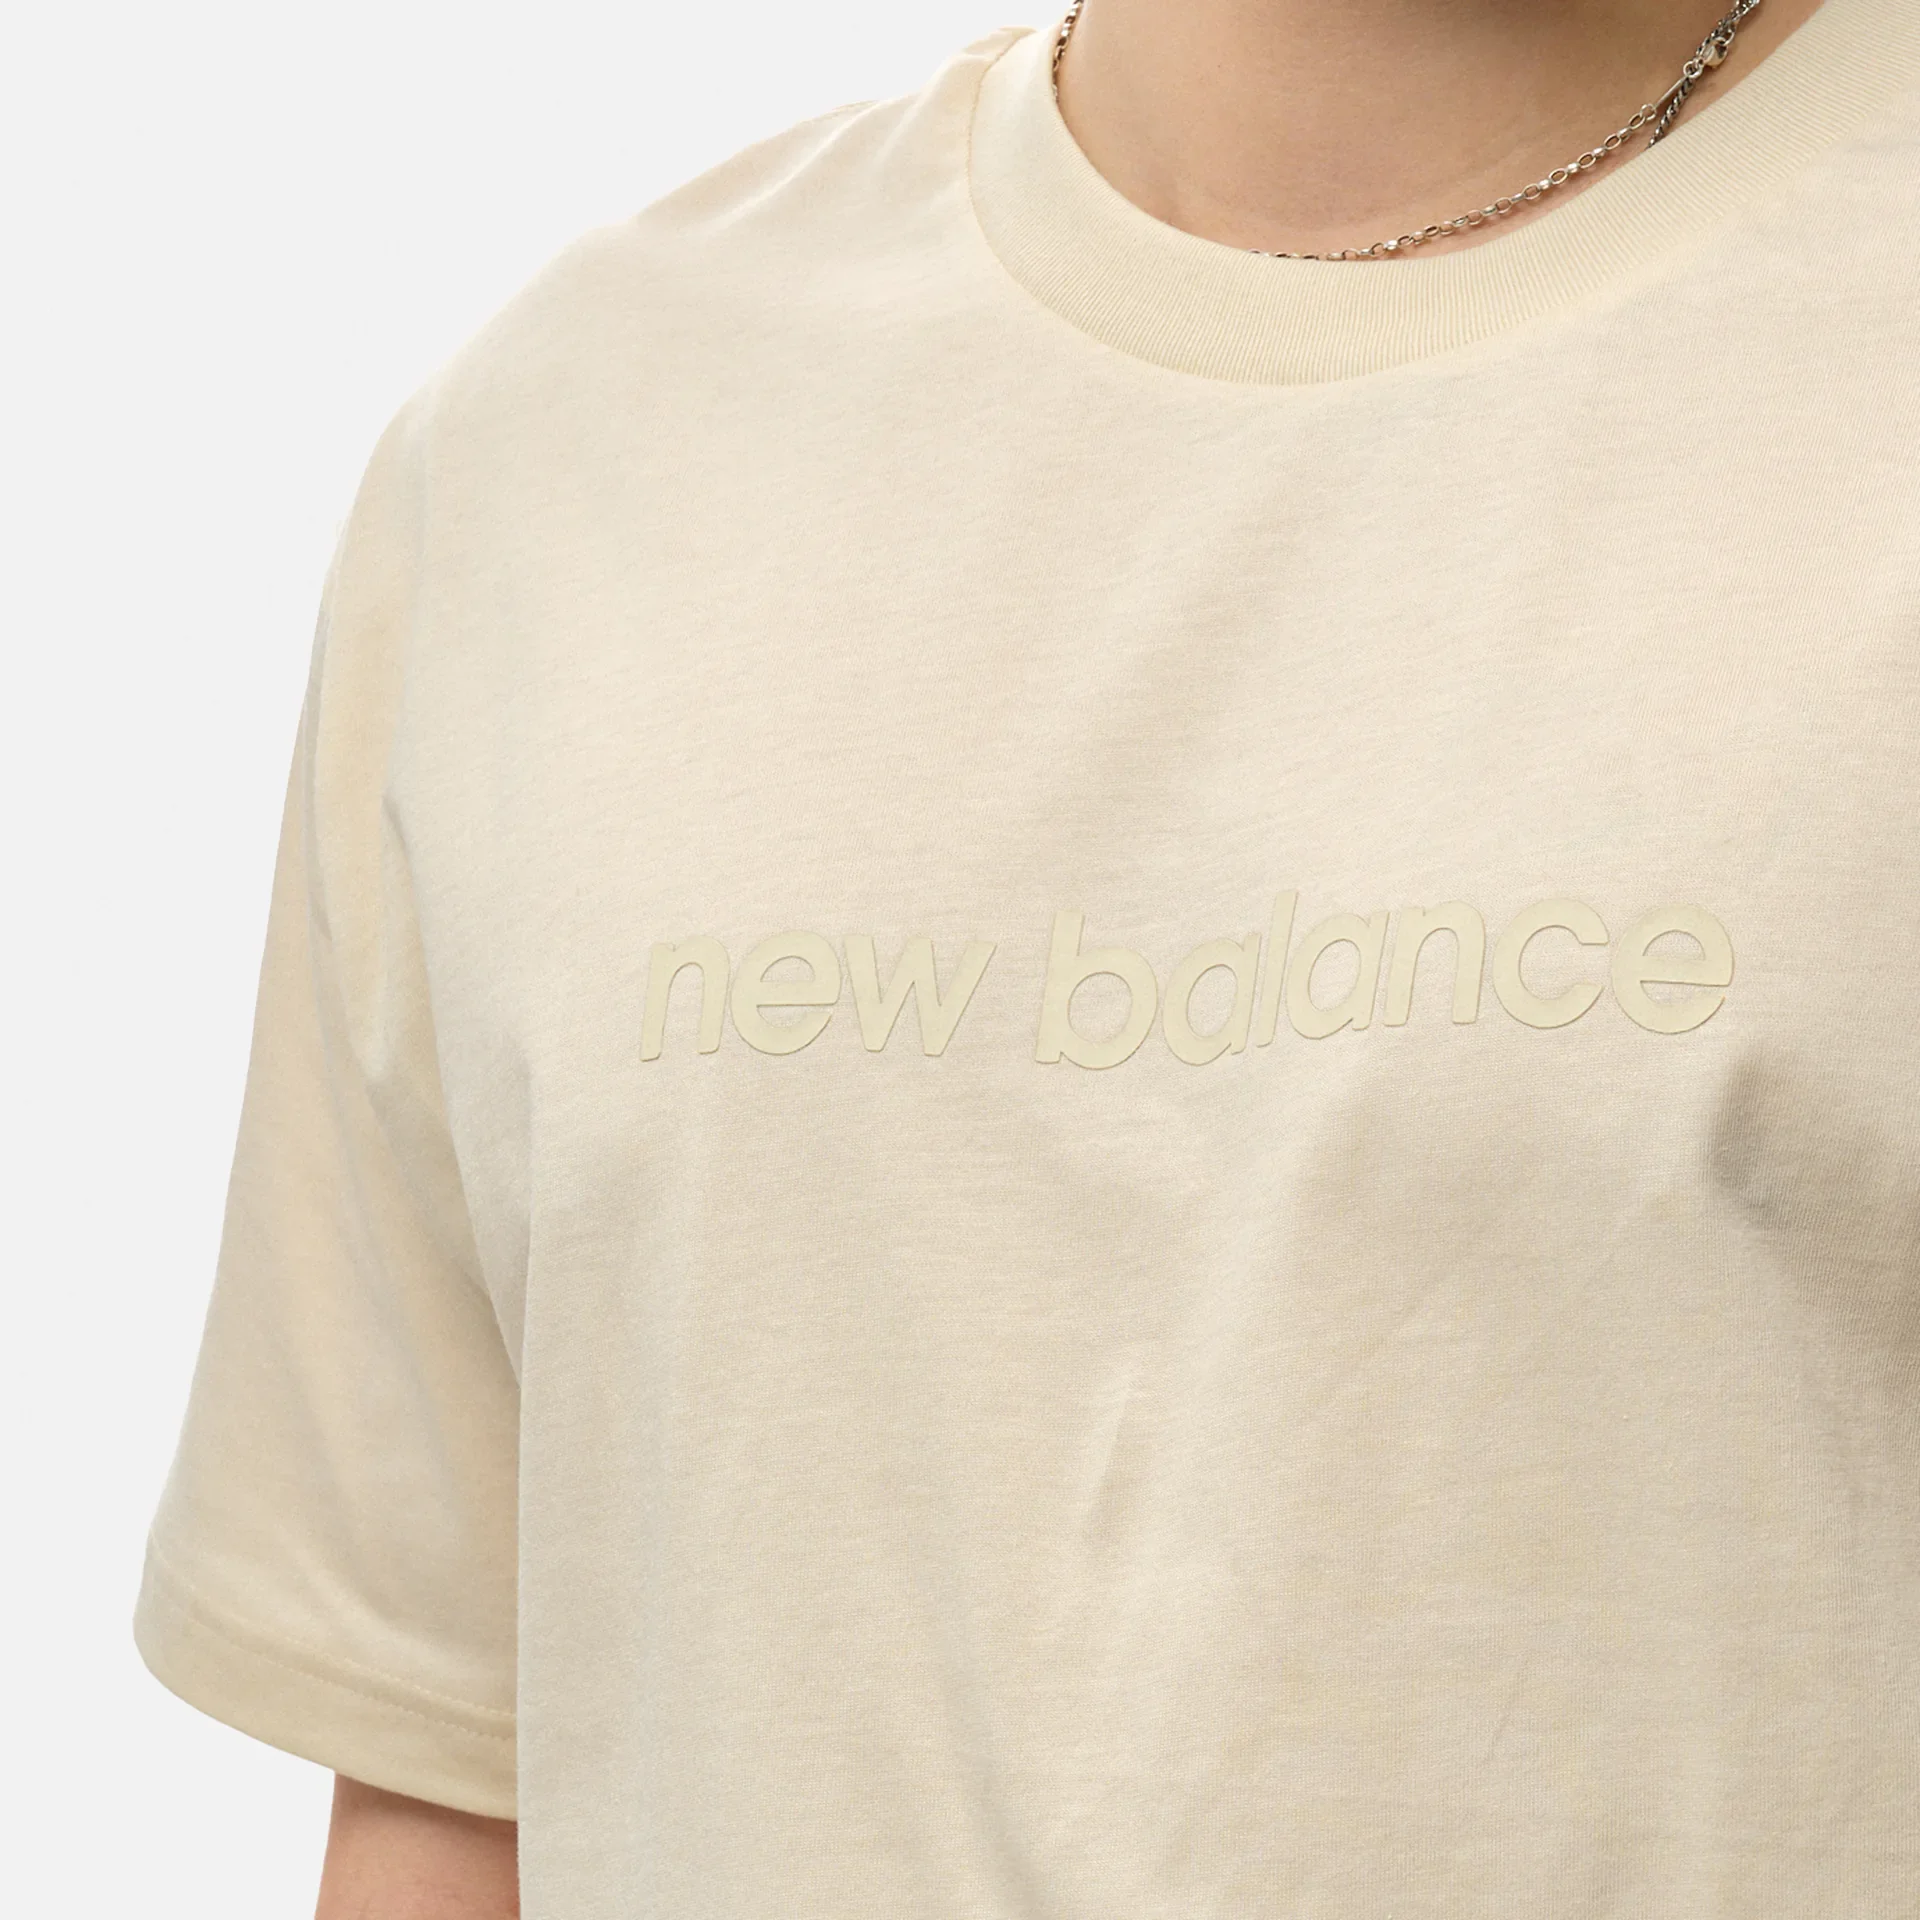 New Balance Hyper Density Graphic T-Shirt Linen